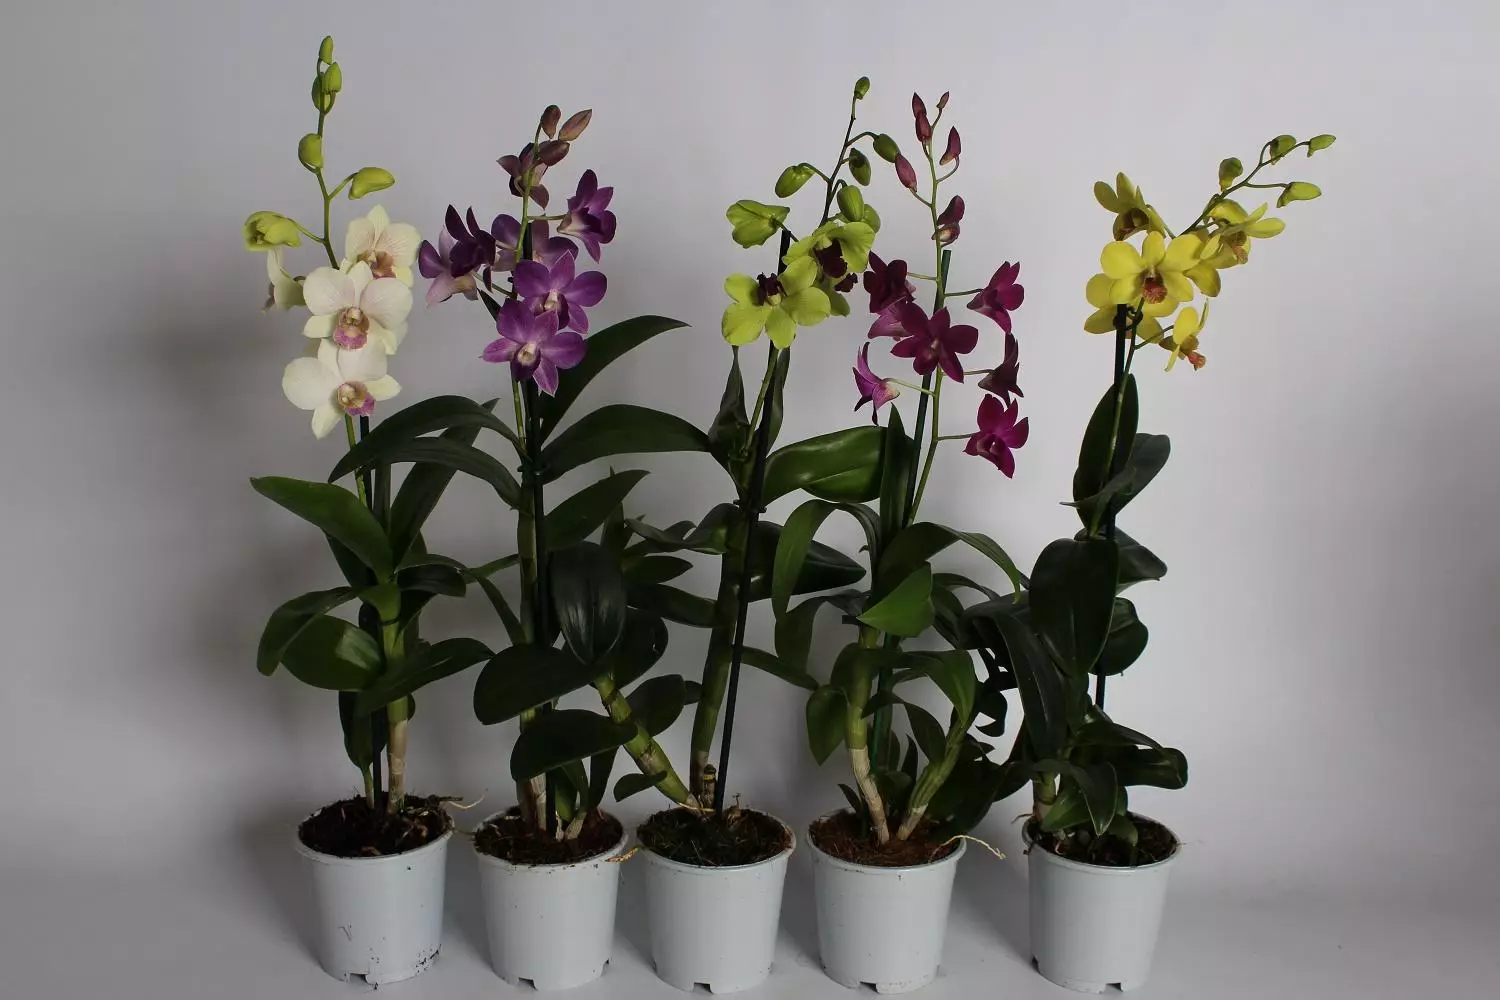 [Pepelakan di bumi] Dendrobium Orchids di bumi: Pintonan populer sareng perawatan